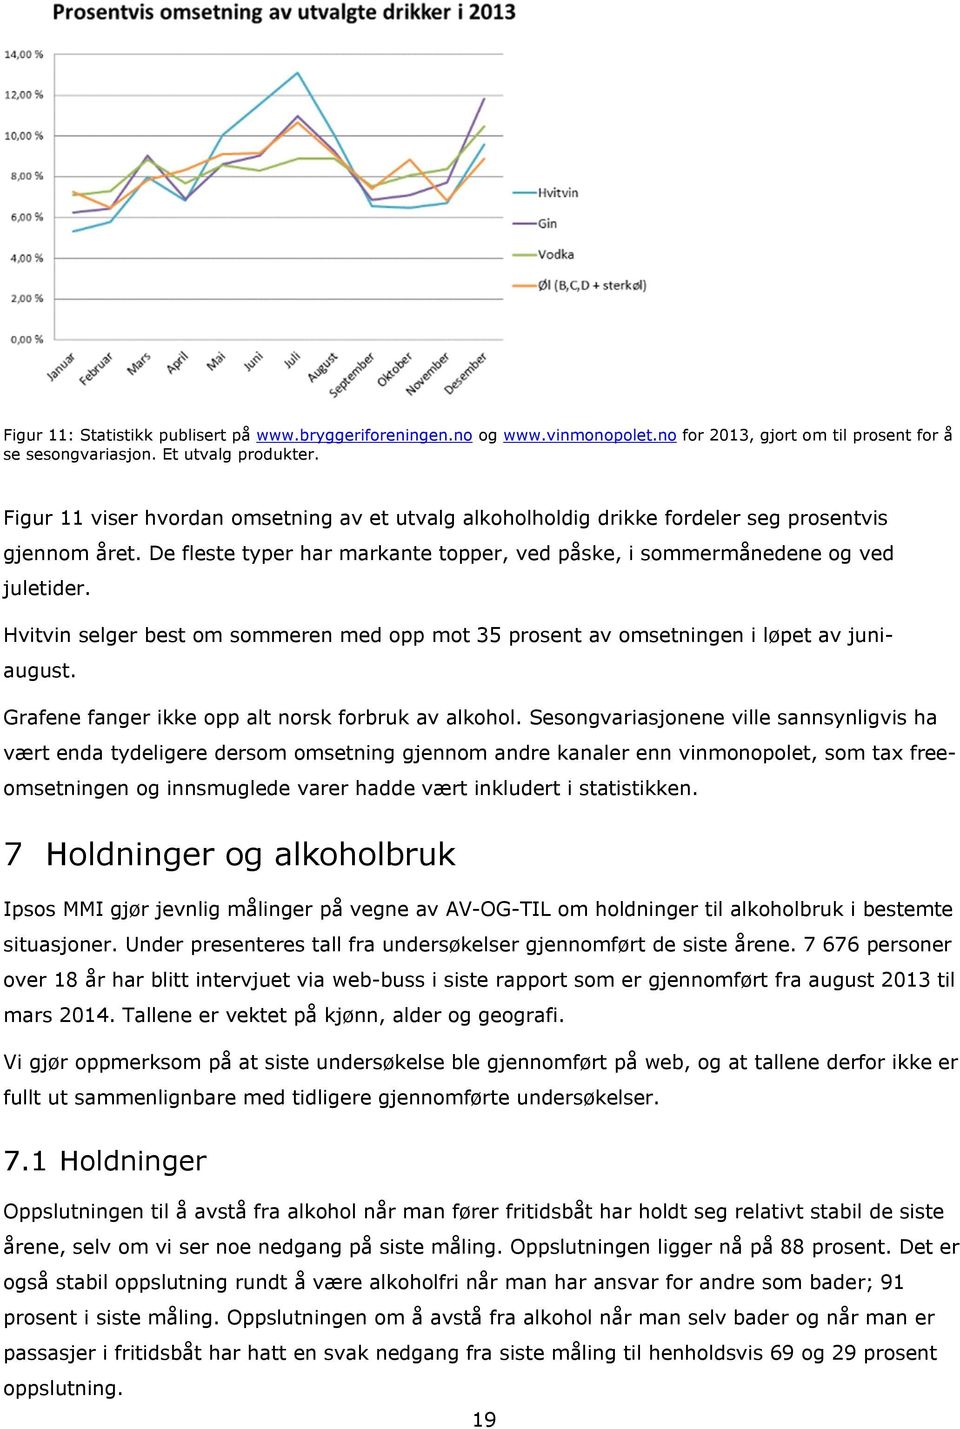 Hvitvin selger best om sommeren med opp mot 35 prosent av omsetningen i løpet av juniaugust. Grafene fanger ikke opp alt norsk forbruk av alkohol.